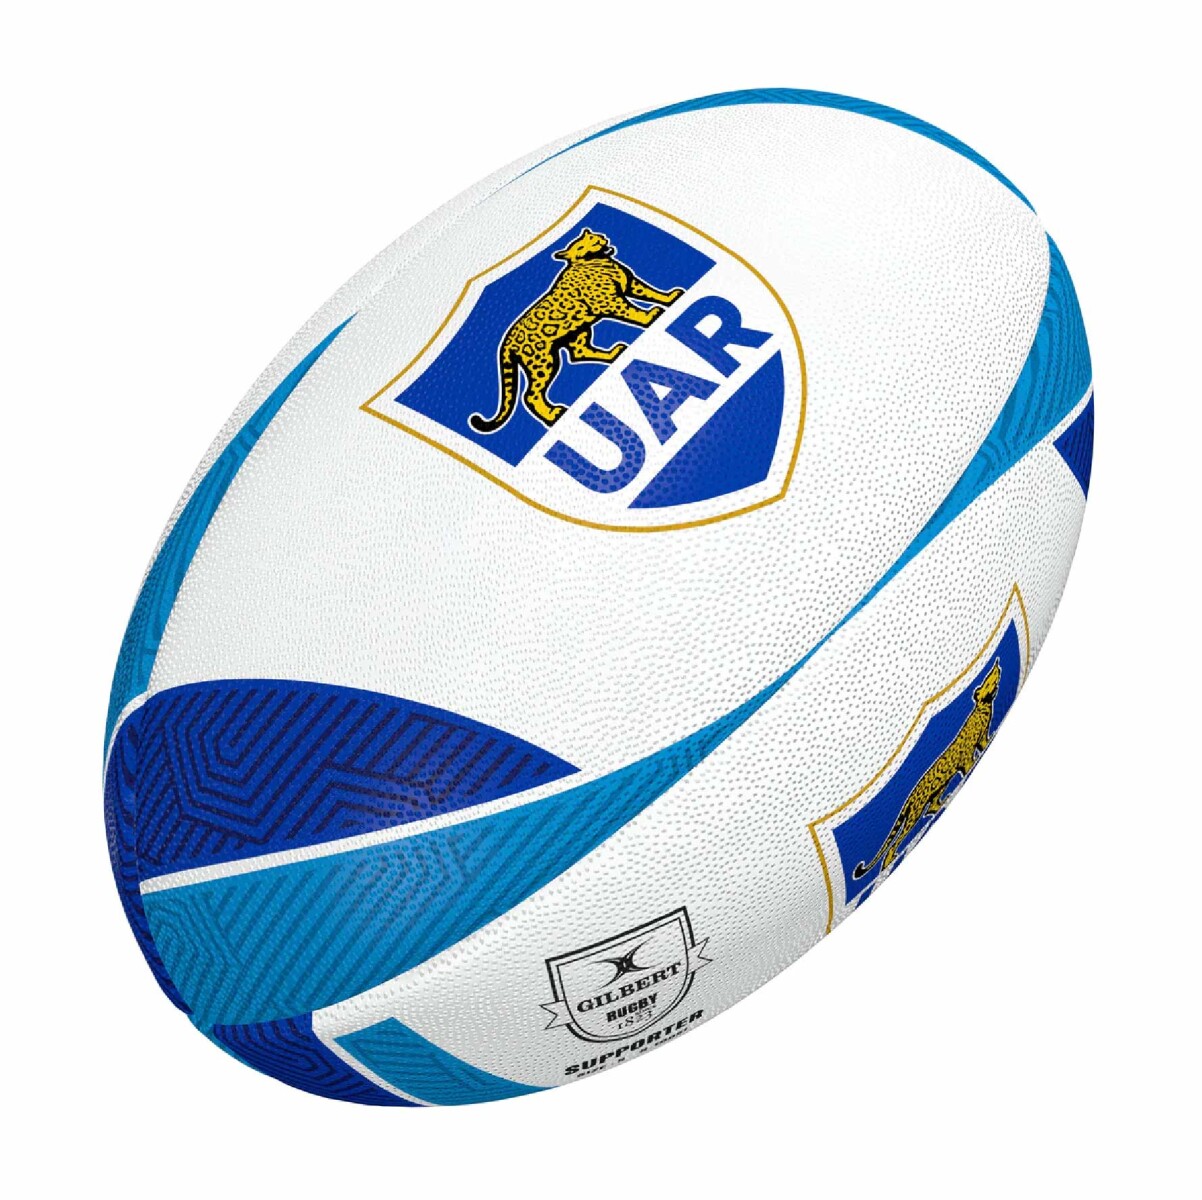 Pelota De Rugby Gilbert Supporter Ball - UAR Argentina 